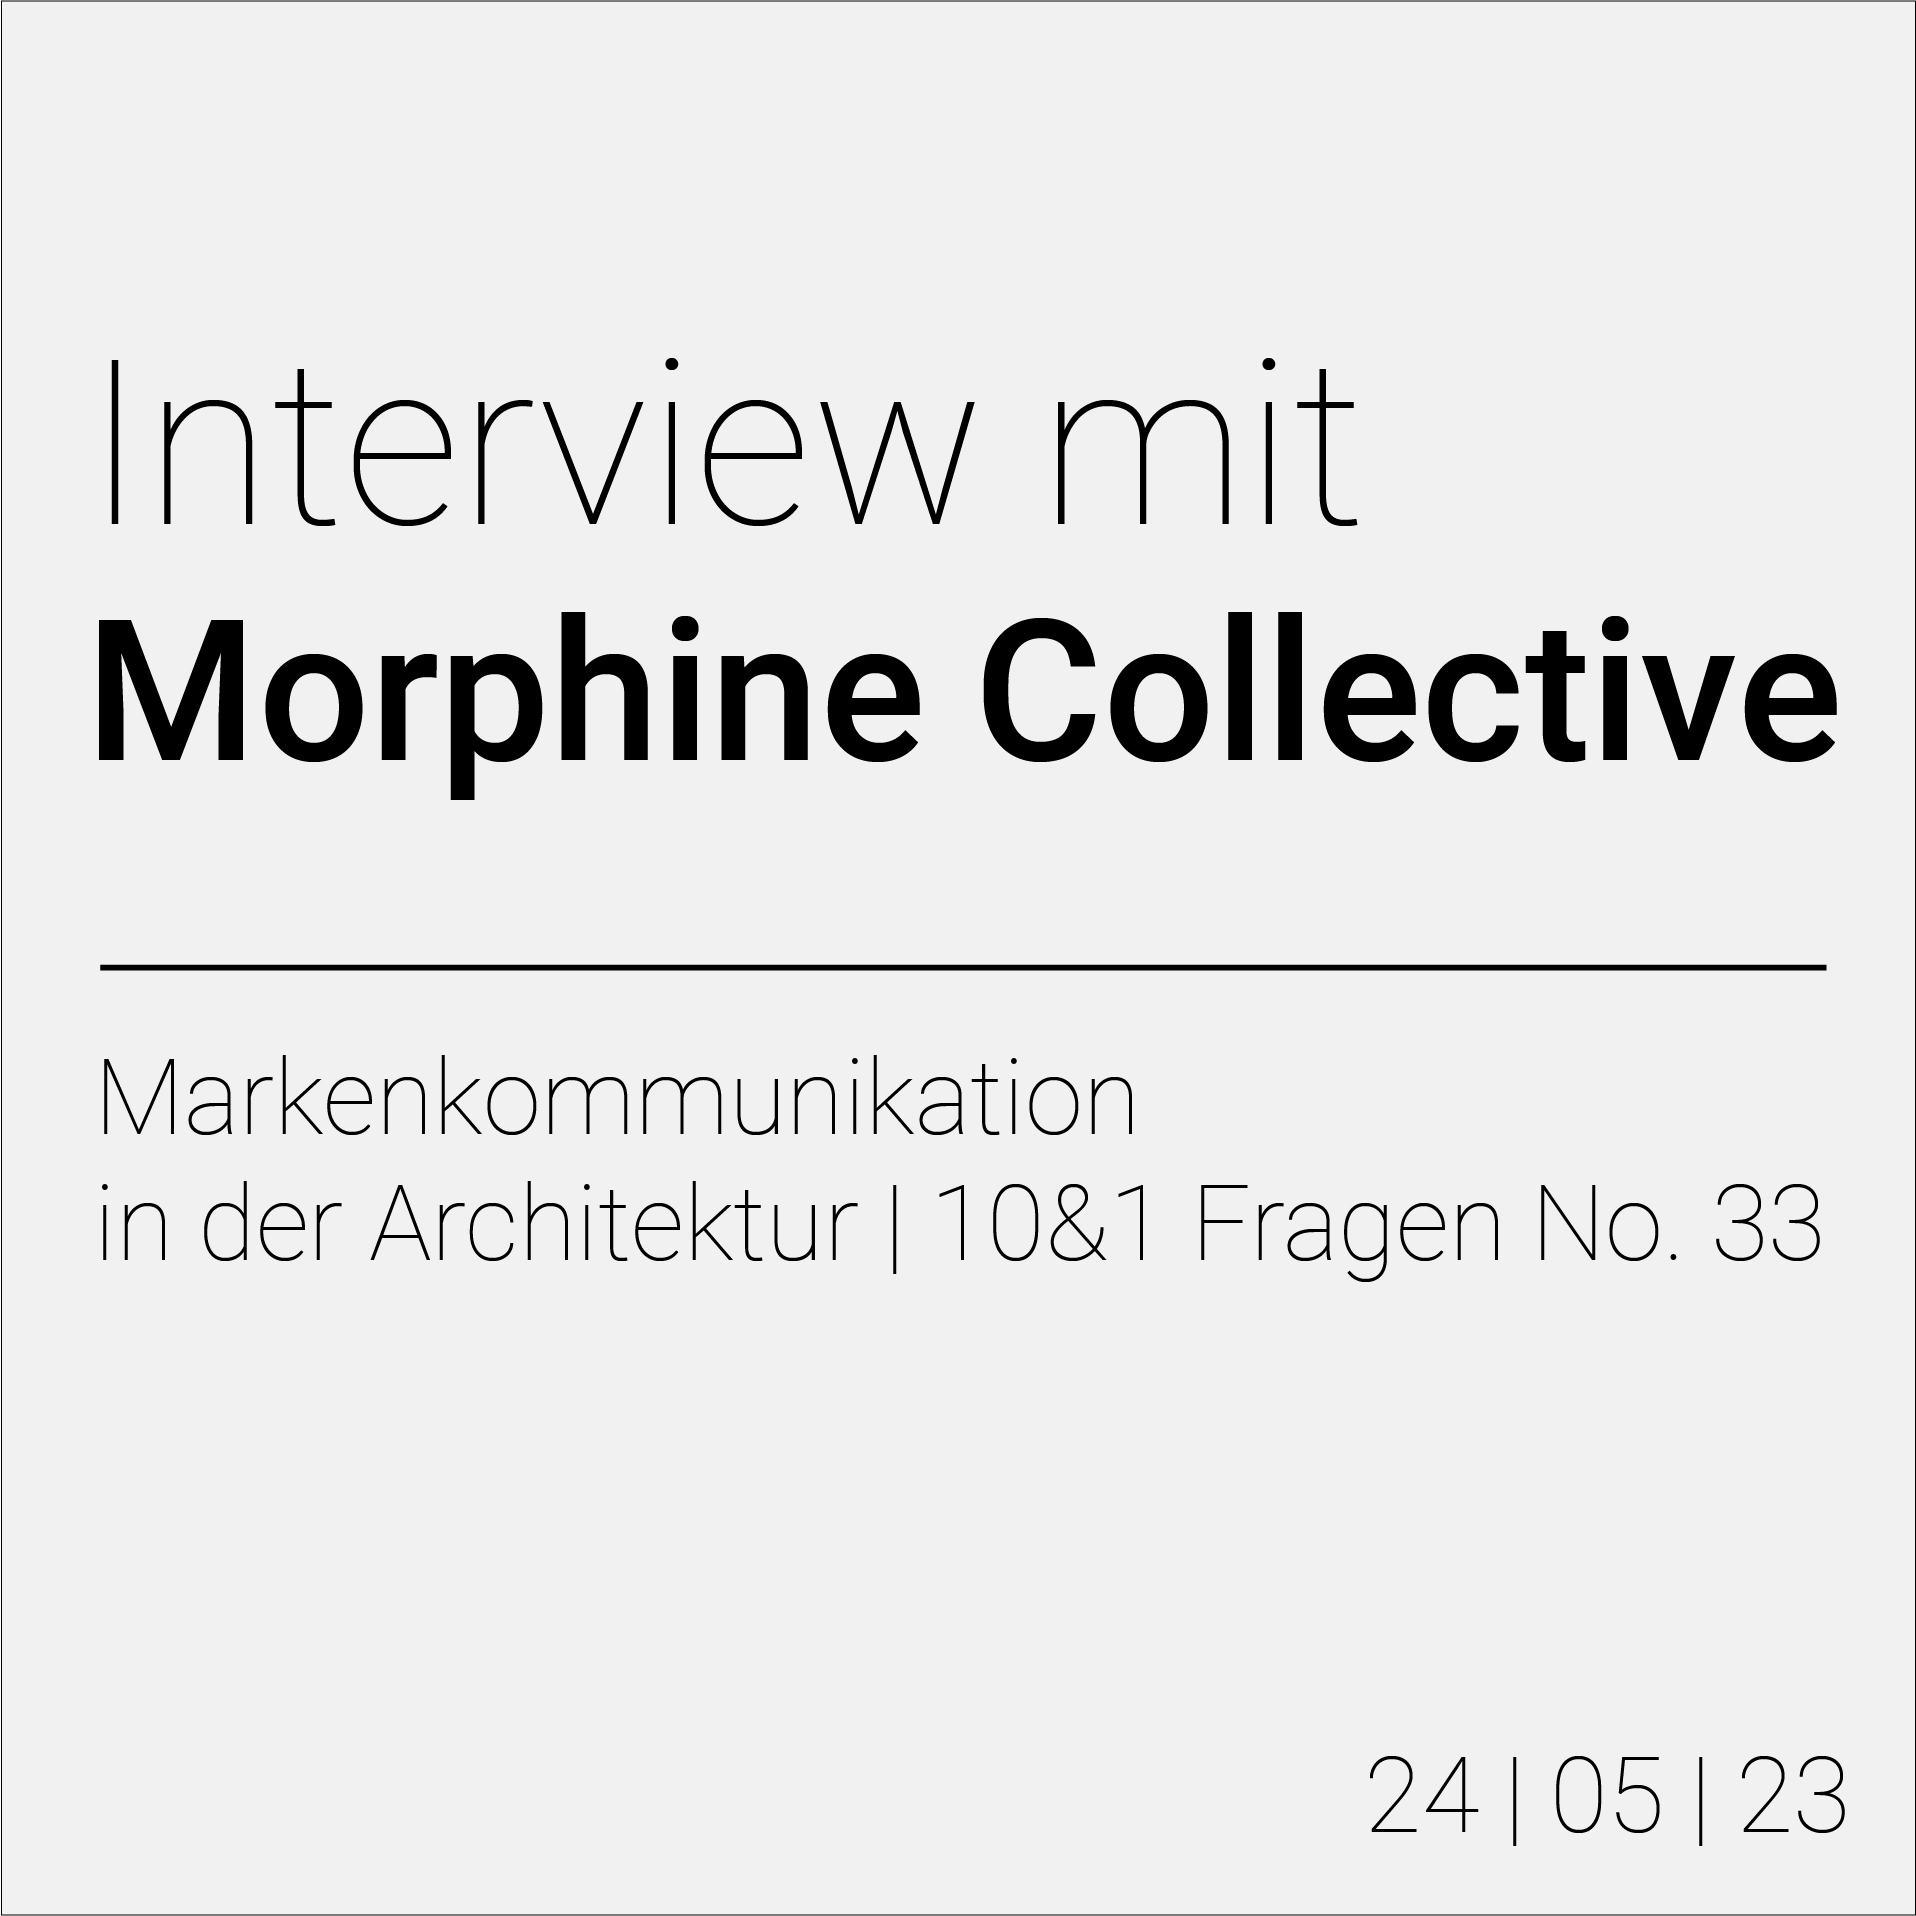 Morphine Collective Branding in der Architektur - Interview mit Morphine Collective